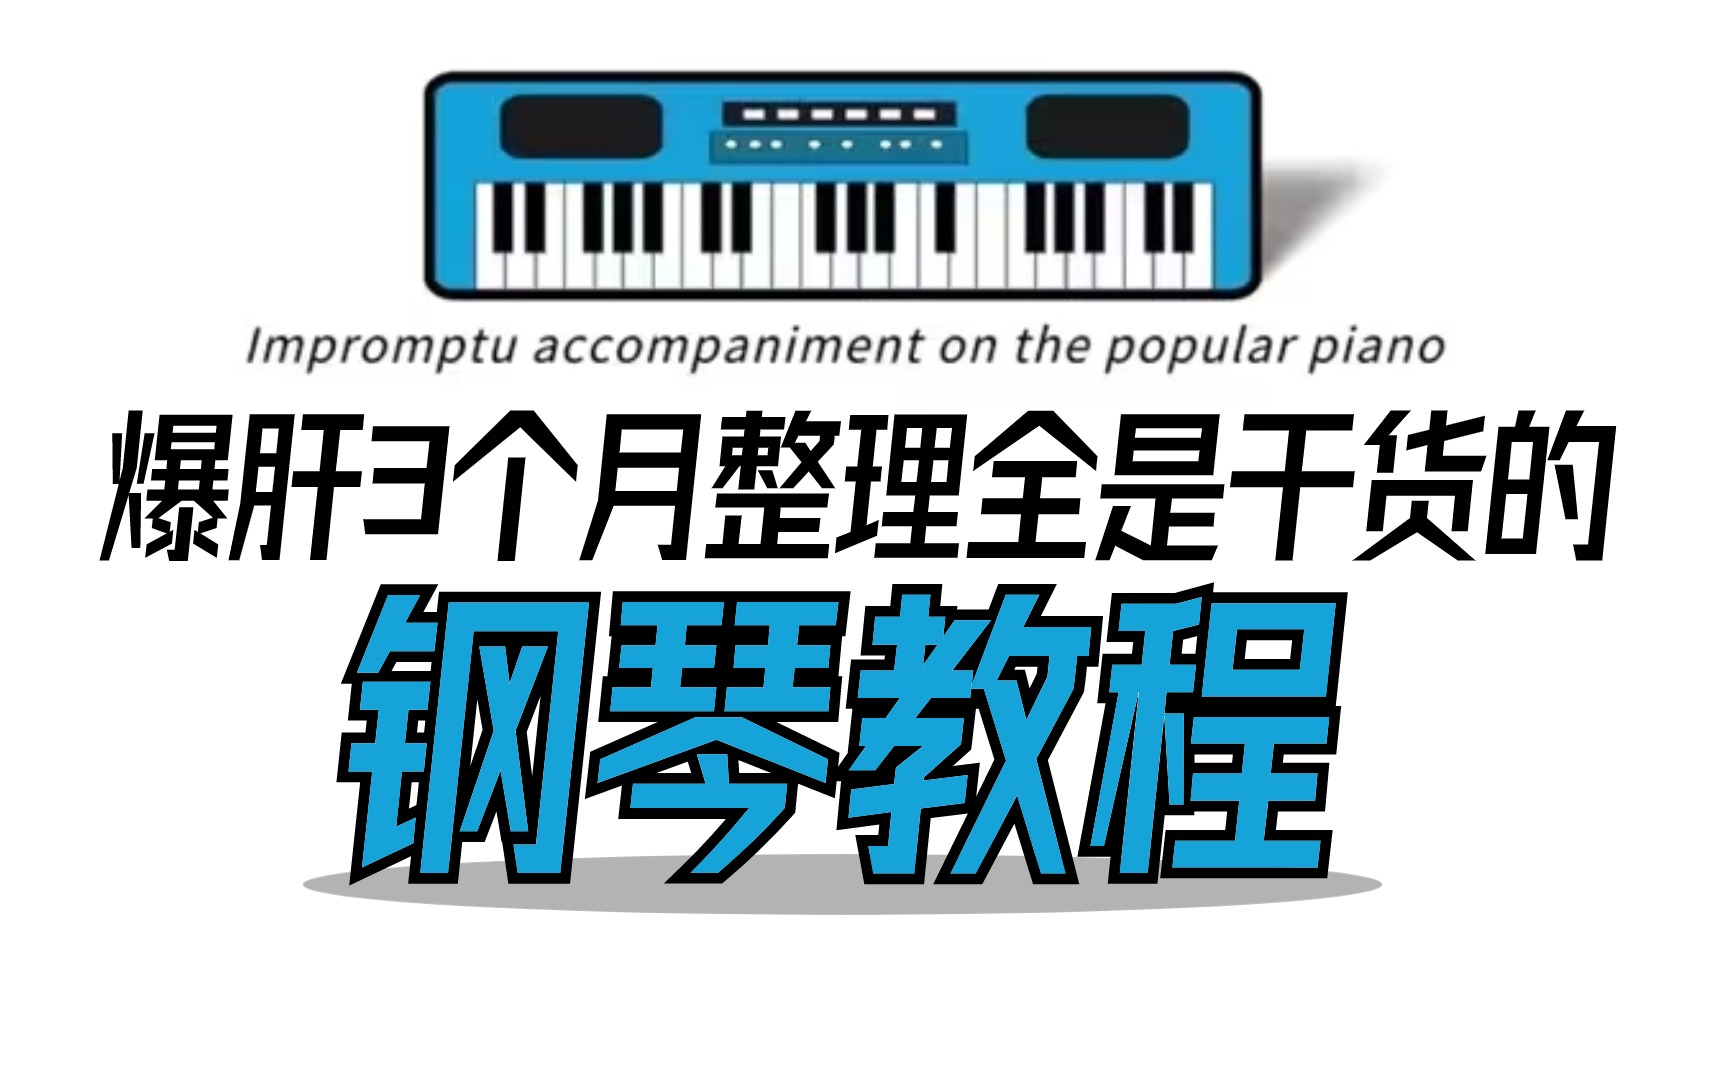 B站最通俗易懂的钢琴课程（100集），零基础轻松学！适用于零基础入门学习钢琴、电子琴、电钢琴。